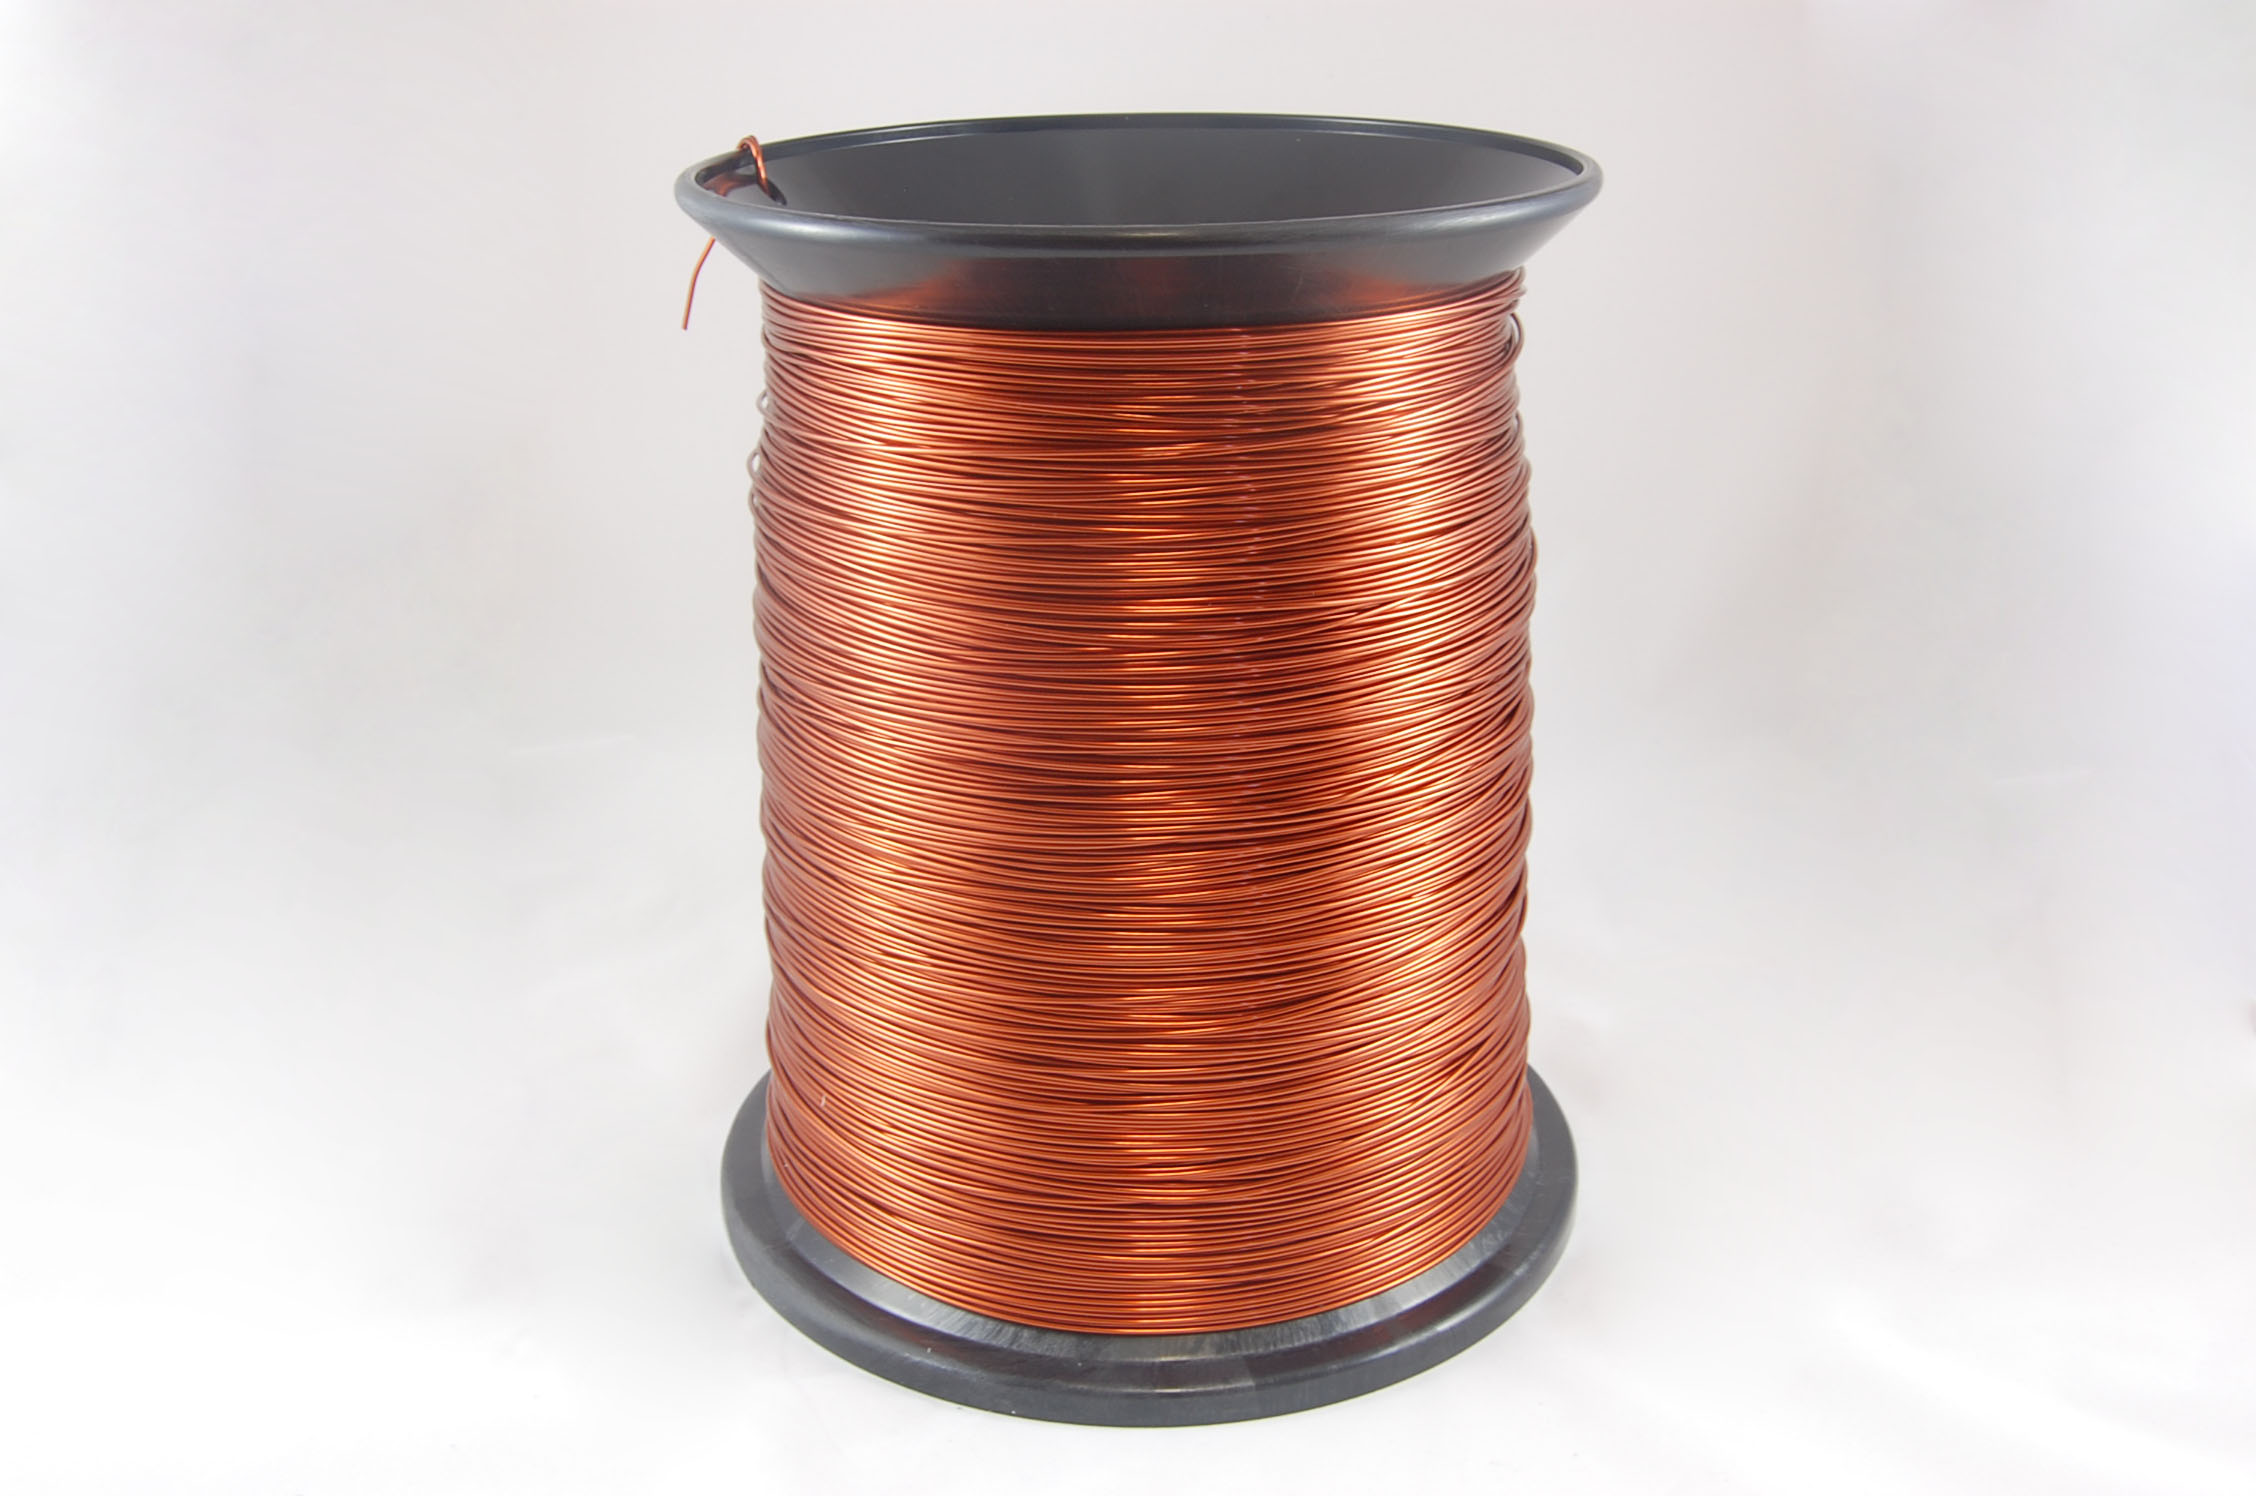 #14 Heavy GP/MR-200 Round MW 35 Copper Magnet Wire 200°C, copper, 85 LB box (average wght.)